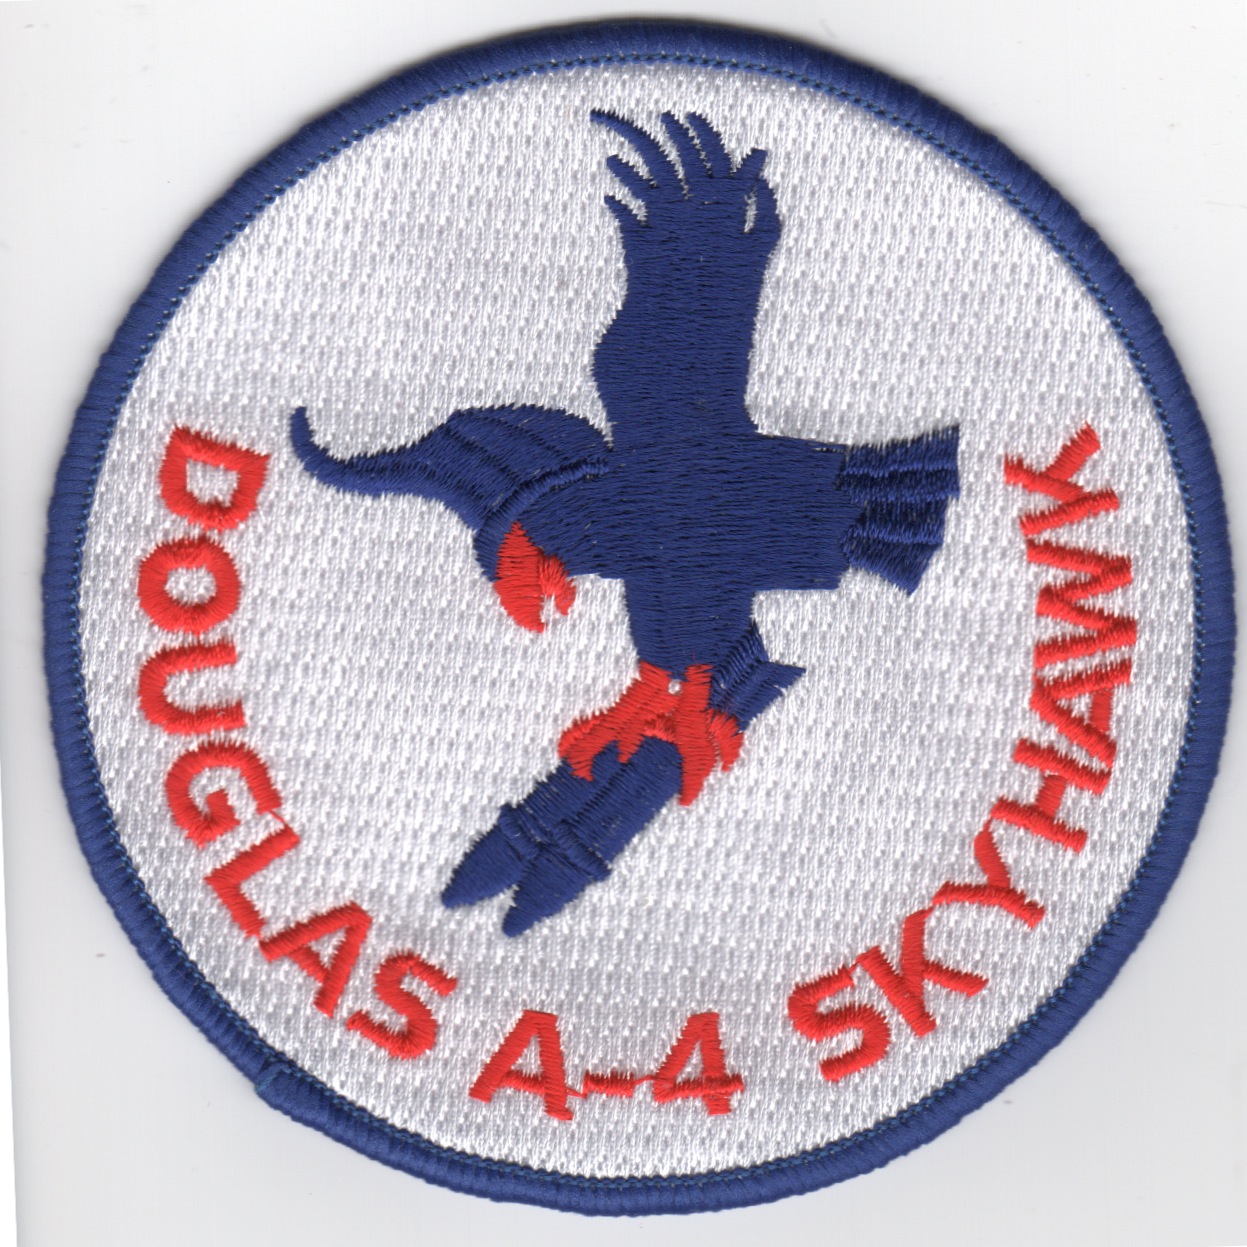 A-4 Skyhawk Patch (White)